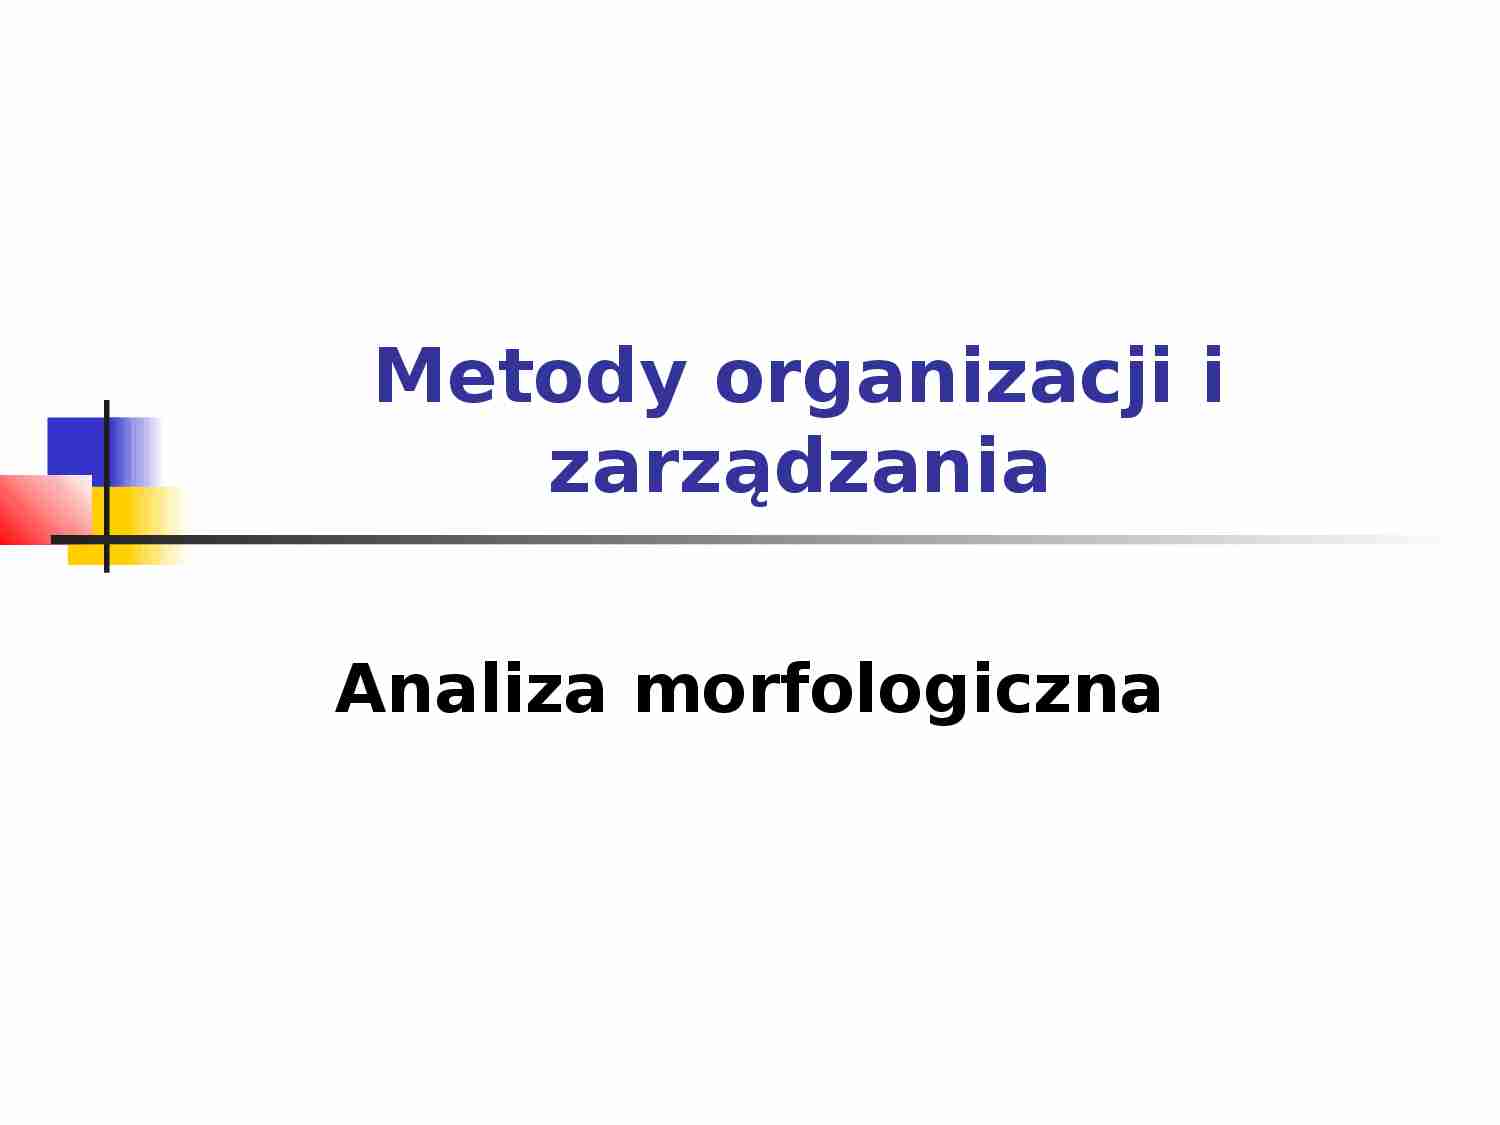 Metody organizacji i zarządzania - prezentacja - strona 1